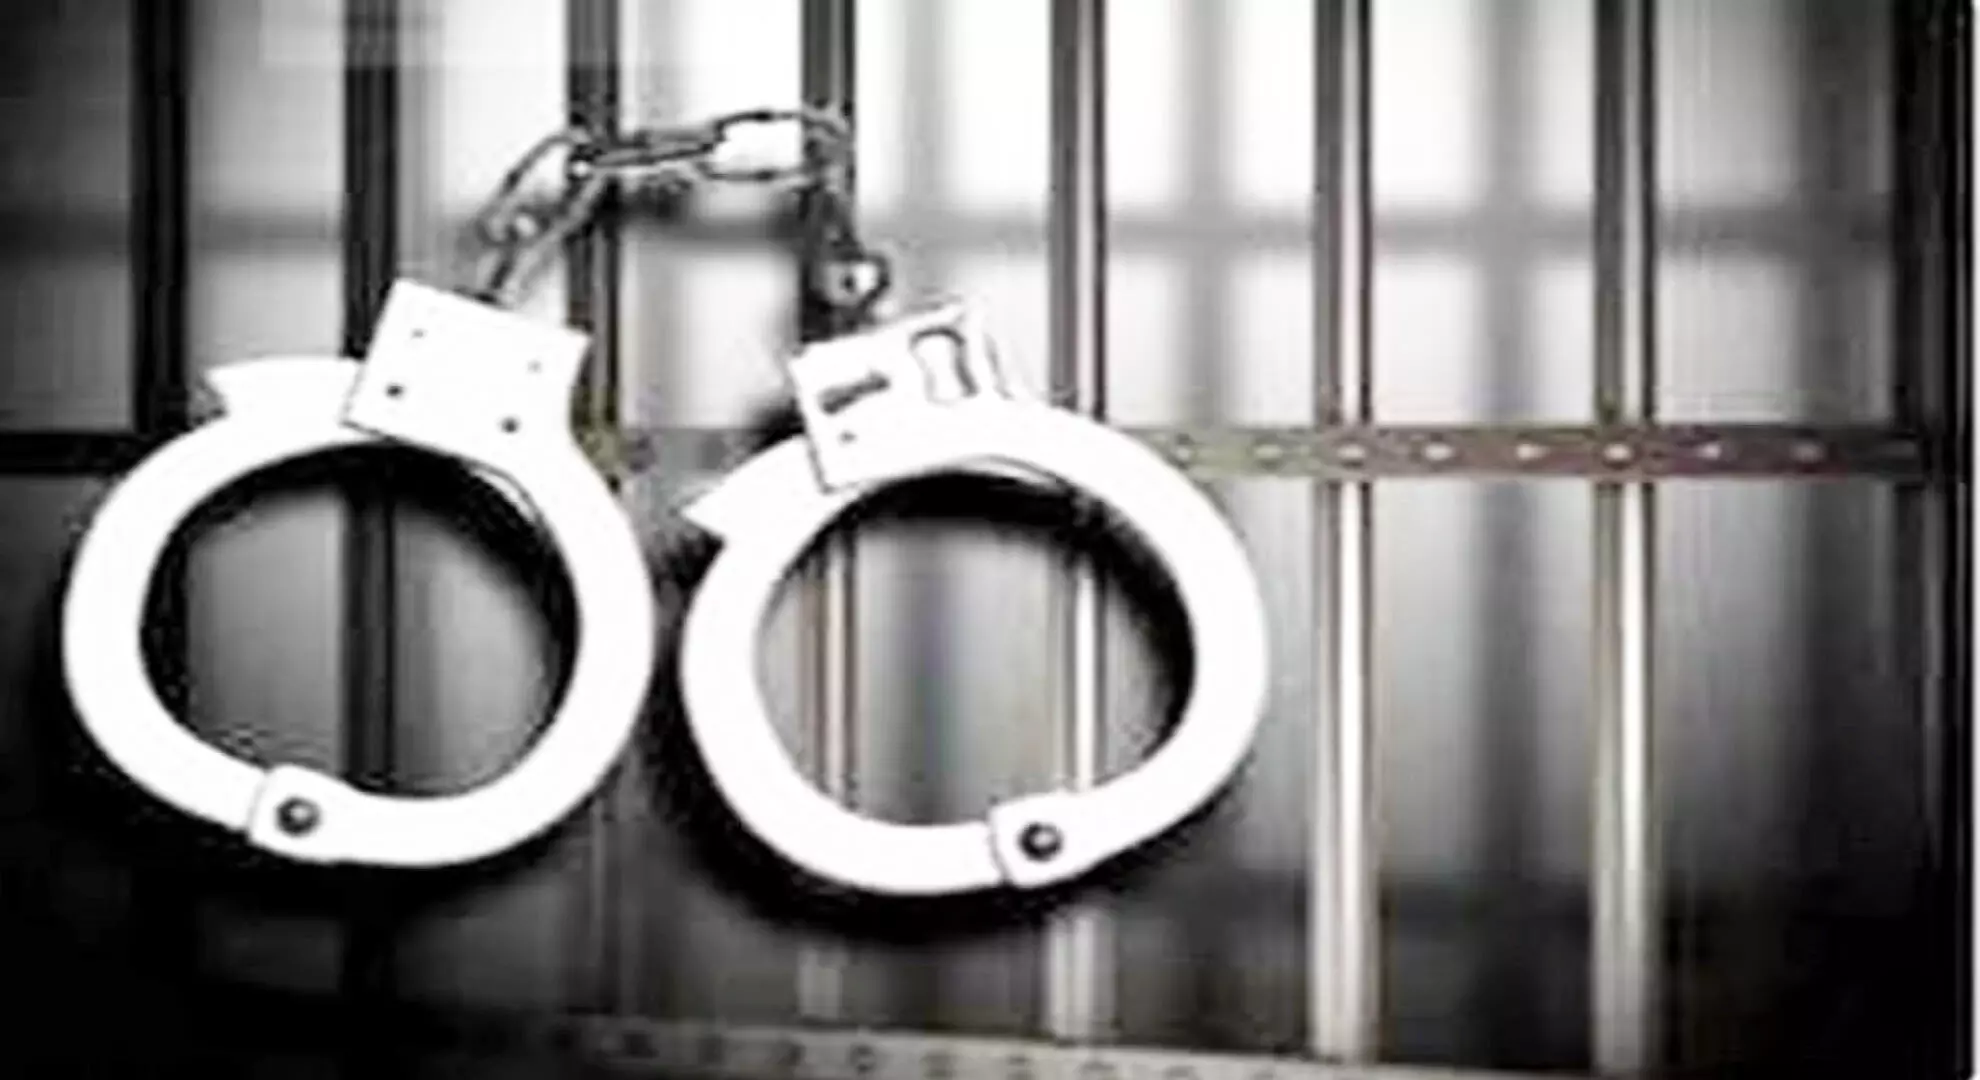 लड़की को शराब गिफ्ट करने वाले दोस्त से मारपीट करने के आरोप में निजी कॉलेज के पांच छात्रों को गिरफ्तार किया गया